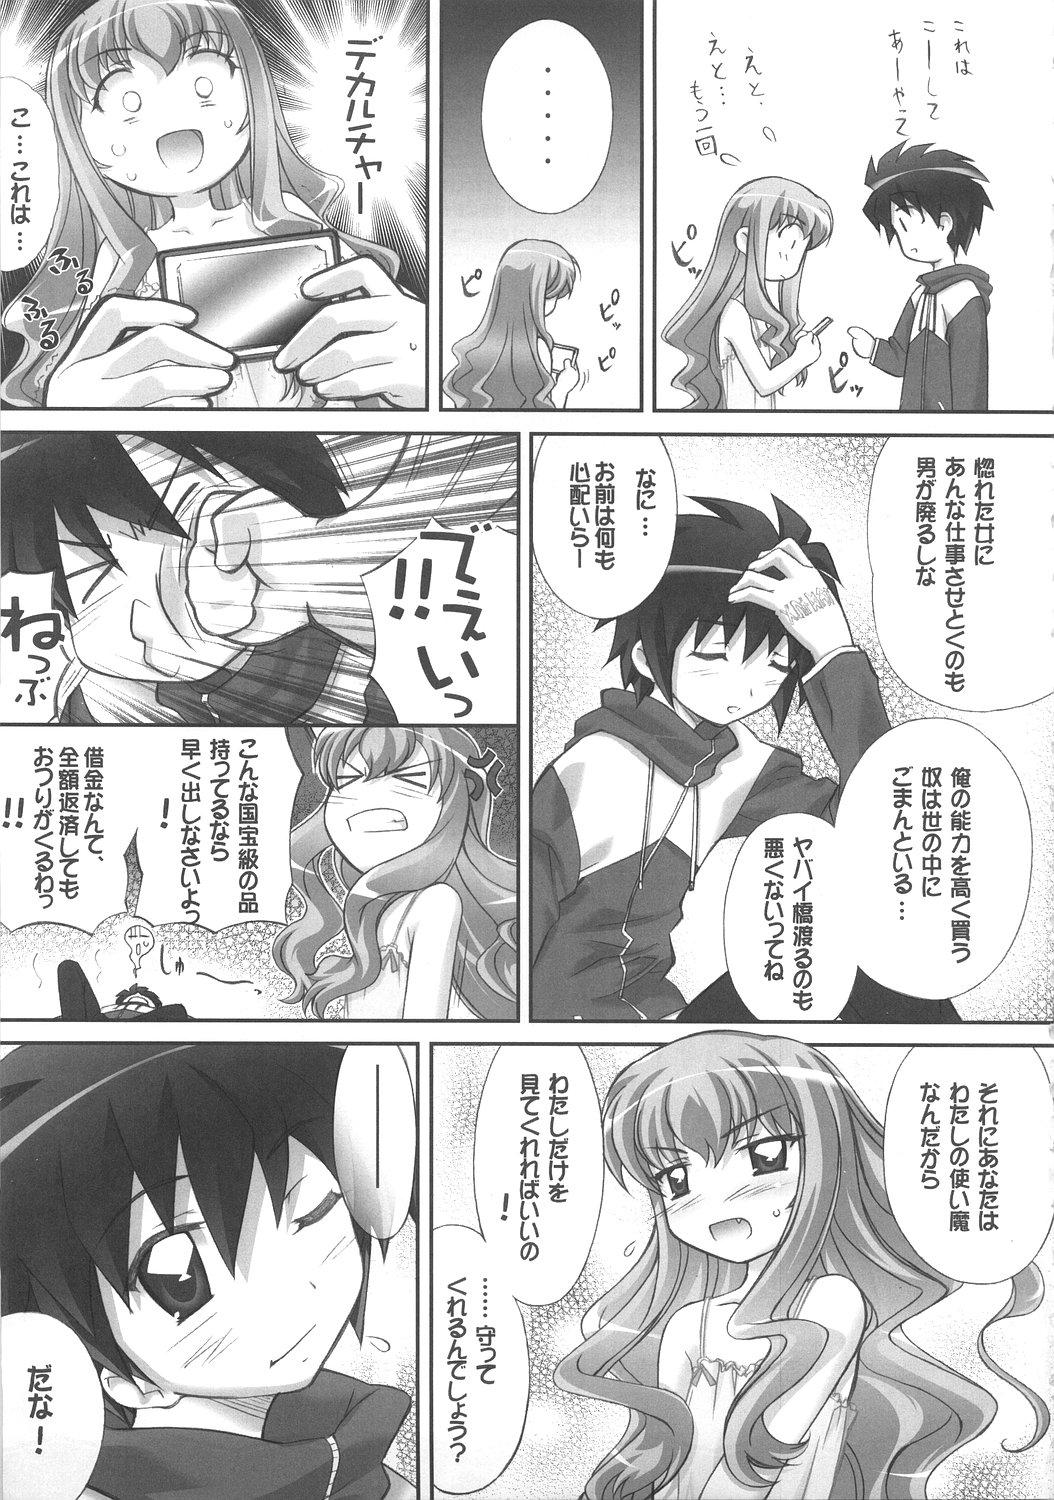 Rica Louise no Gotoku! - Zero no tsukaima Clit - Page 32